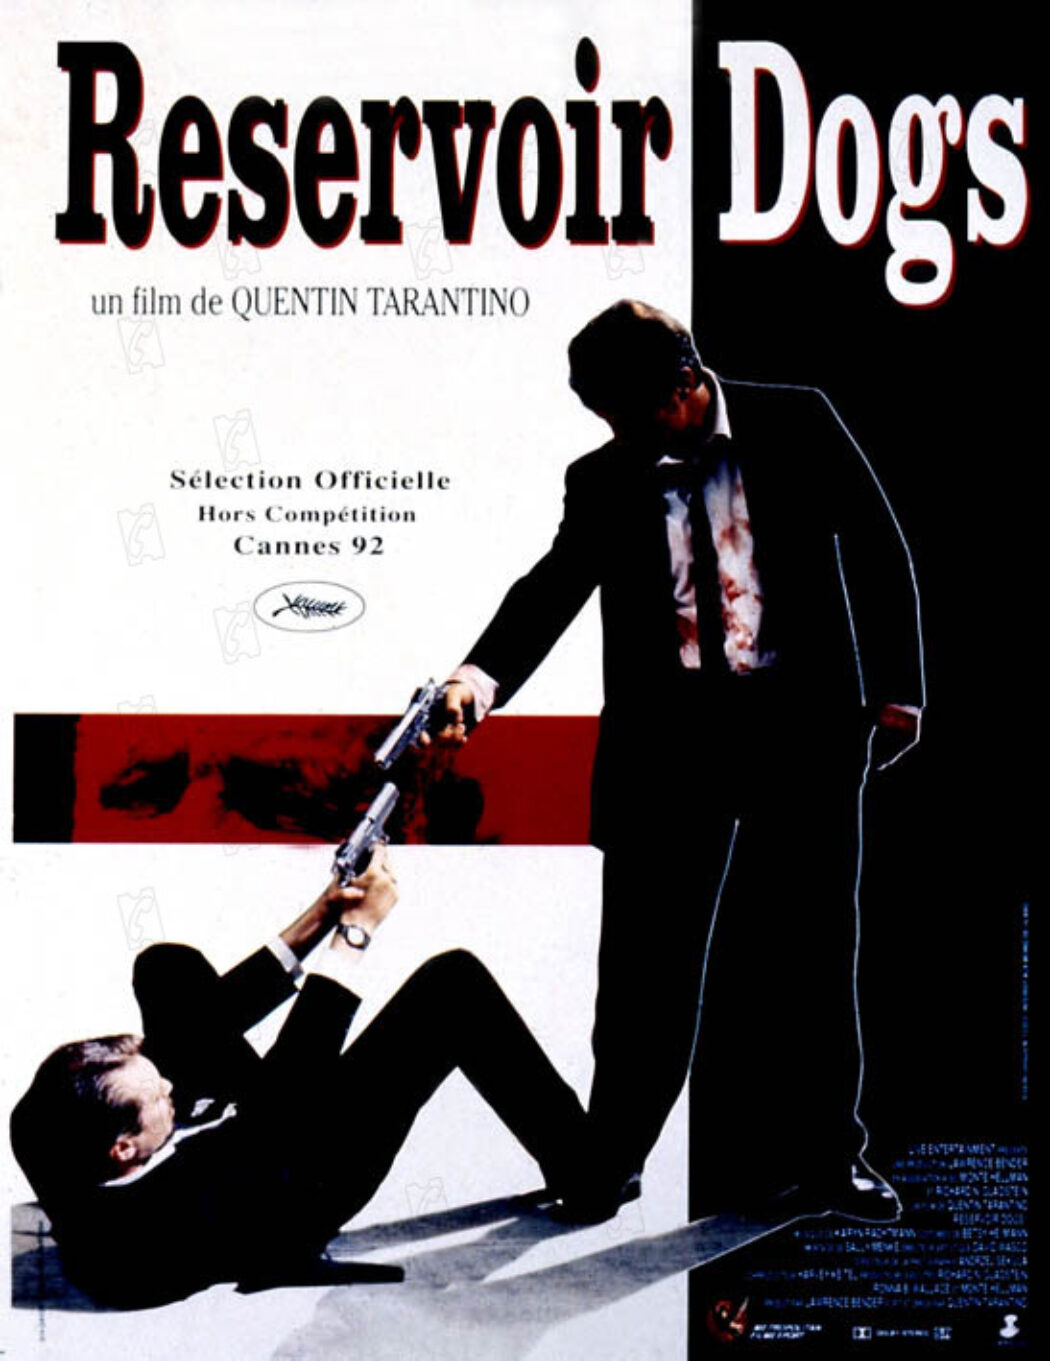 Ambiance “Reservoir Dogs” chez LR